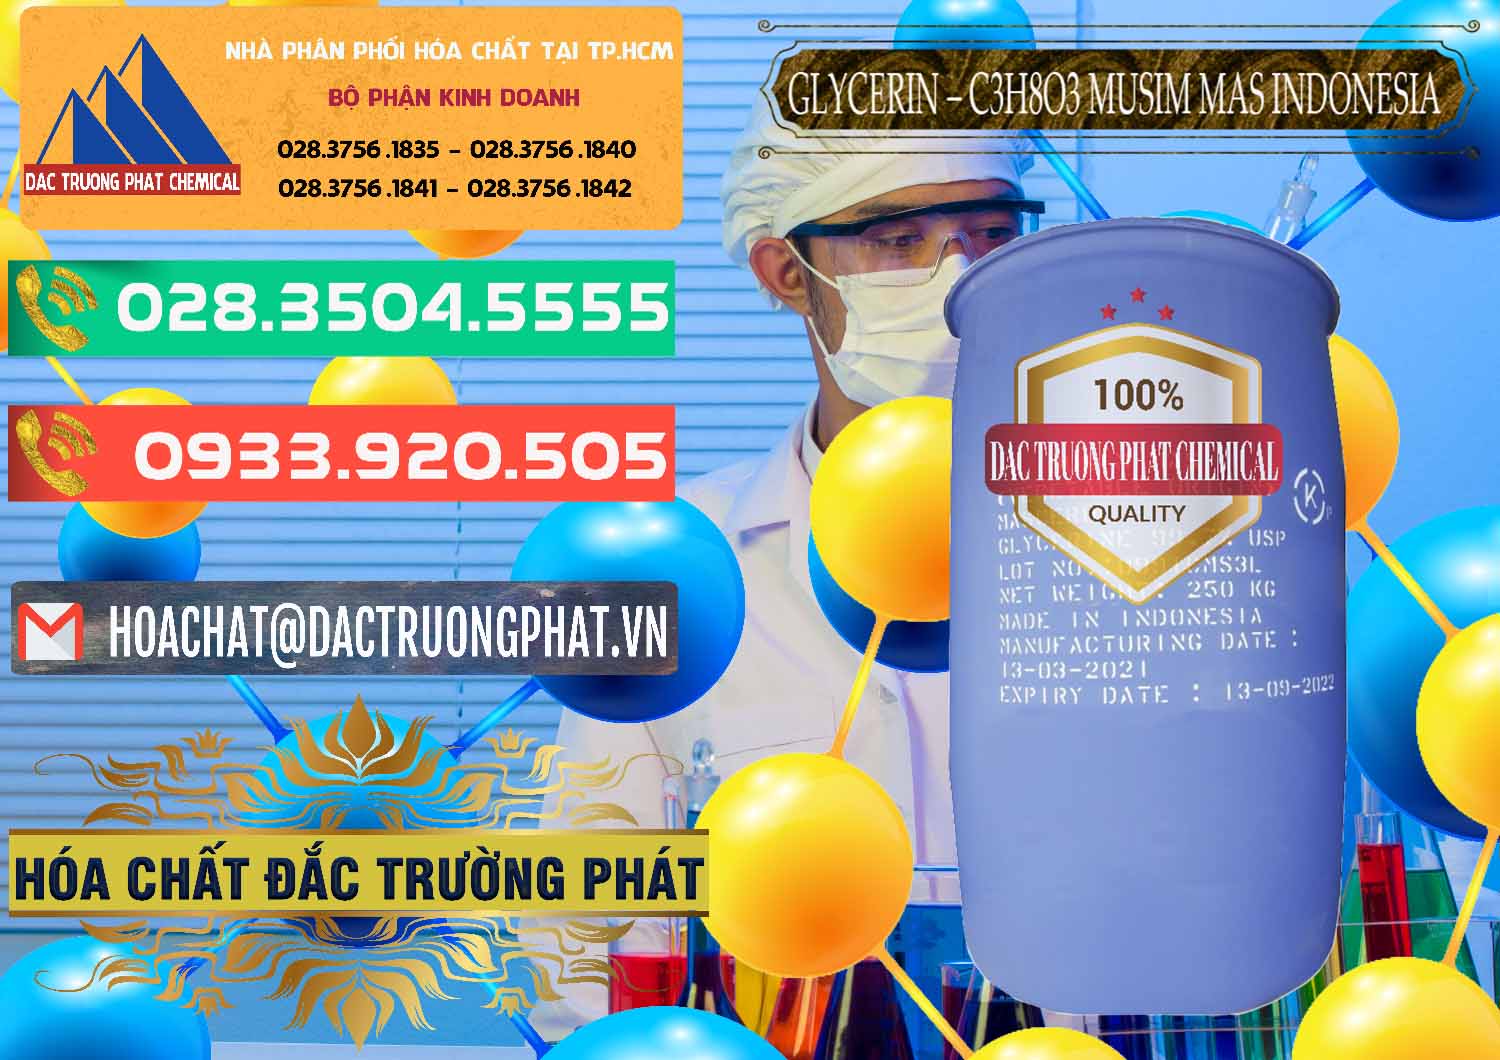 Đơn vị bán _ phân phối Glycerin – C3H8O3 99.7% Musim Mas Indonesia - 0272 - Công ty cung cấp - bán hóa chất tại TP.HCM - congtyhoachat.com.vn